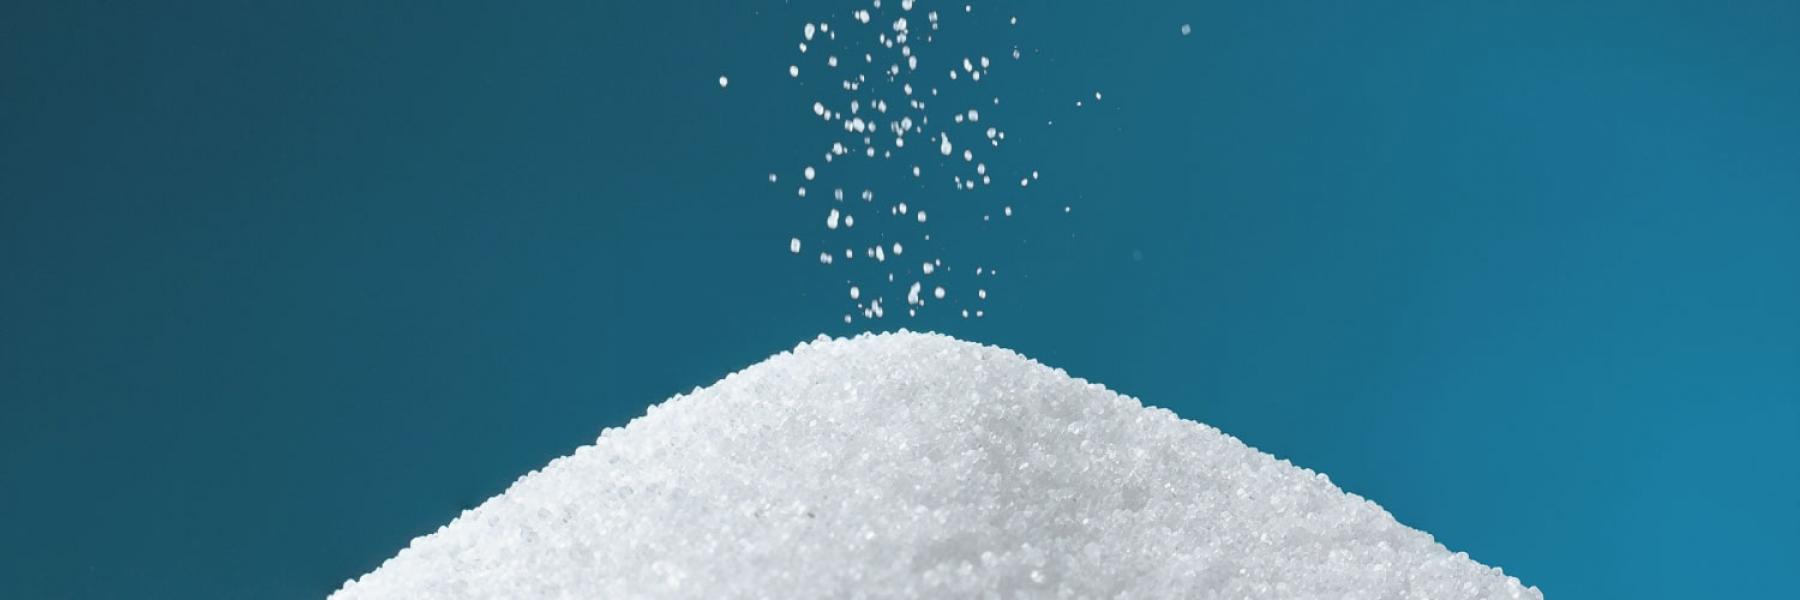 نصائح تساعدك على تقليل استهلاك الملح